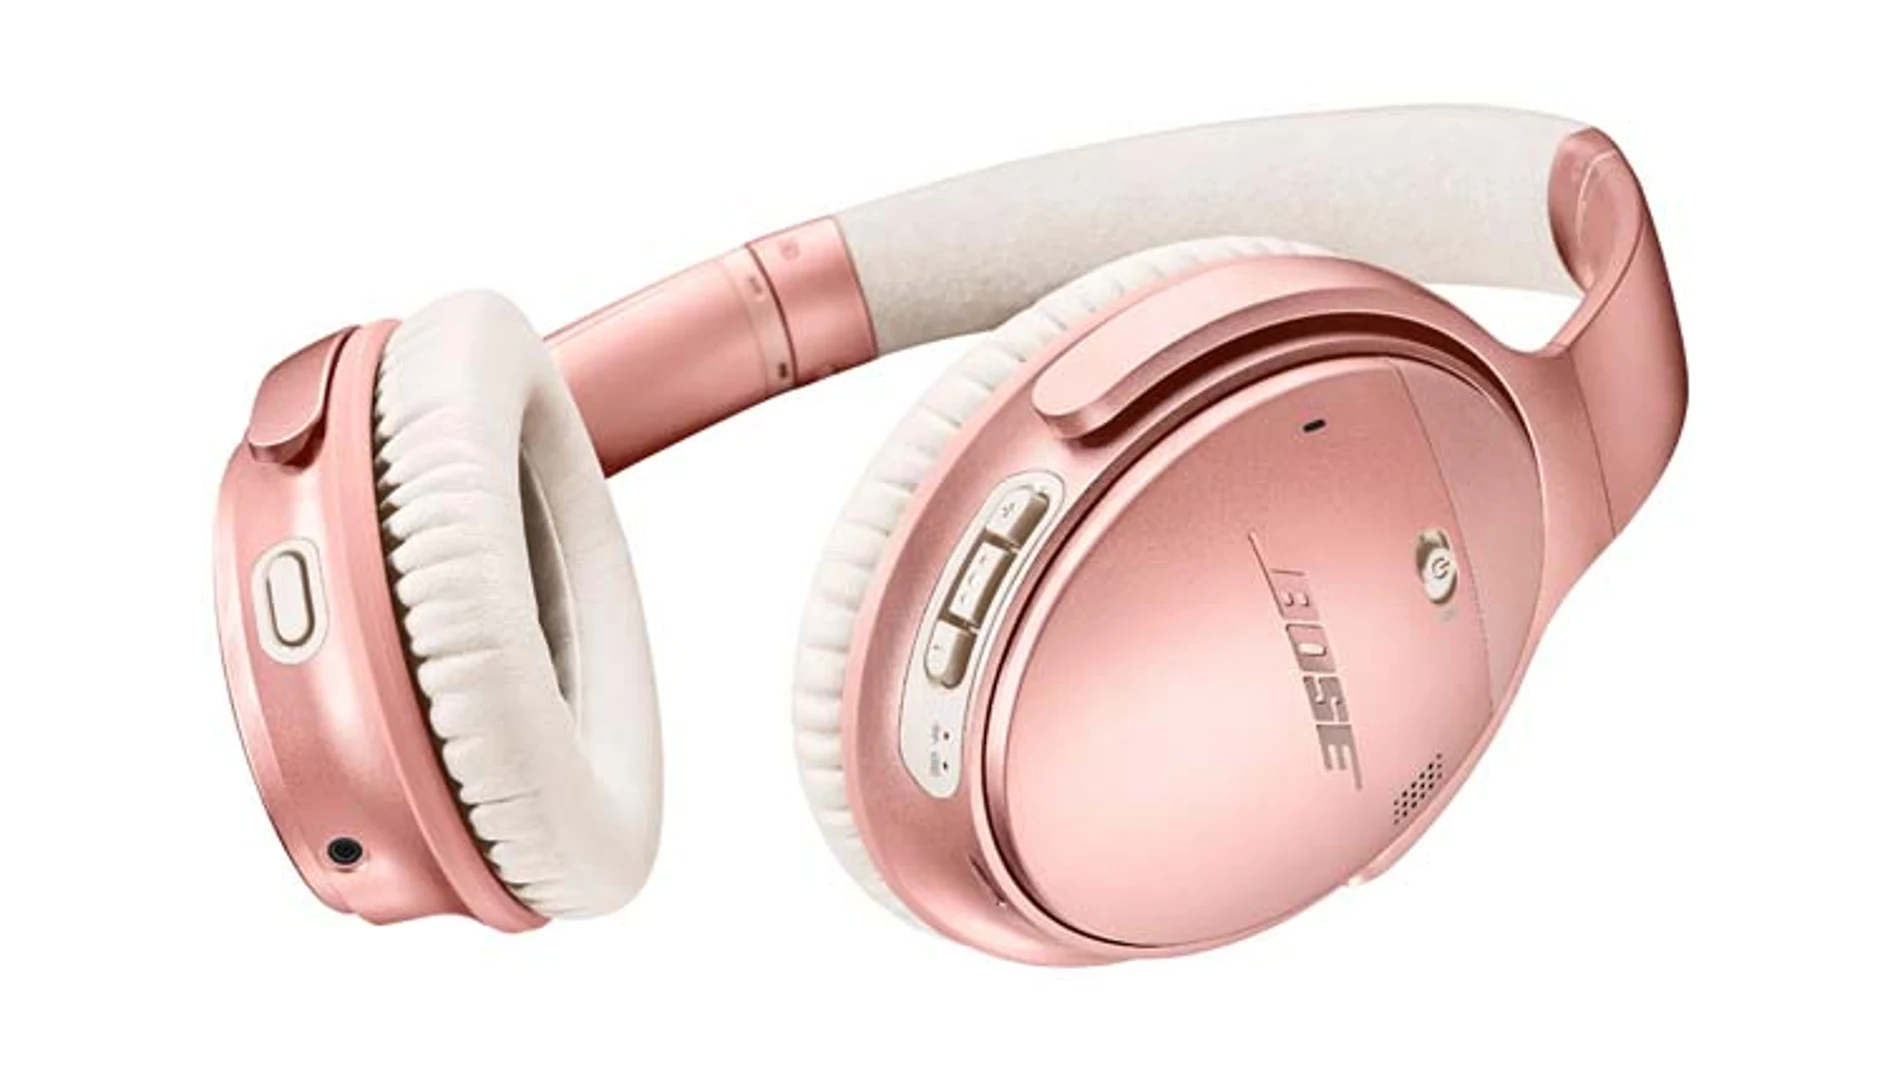 Los auriculares QuietComfort lucen ahora un atractivo color oro rosa metalizado satinado.